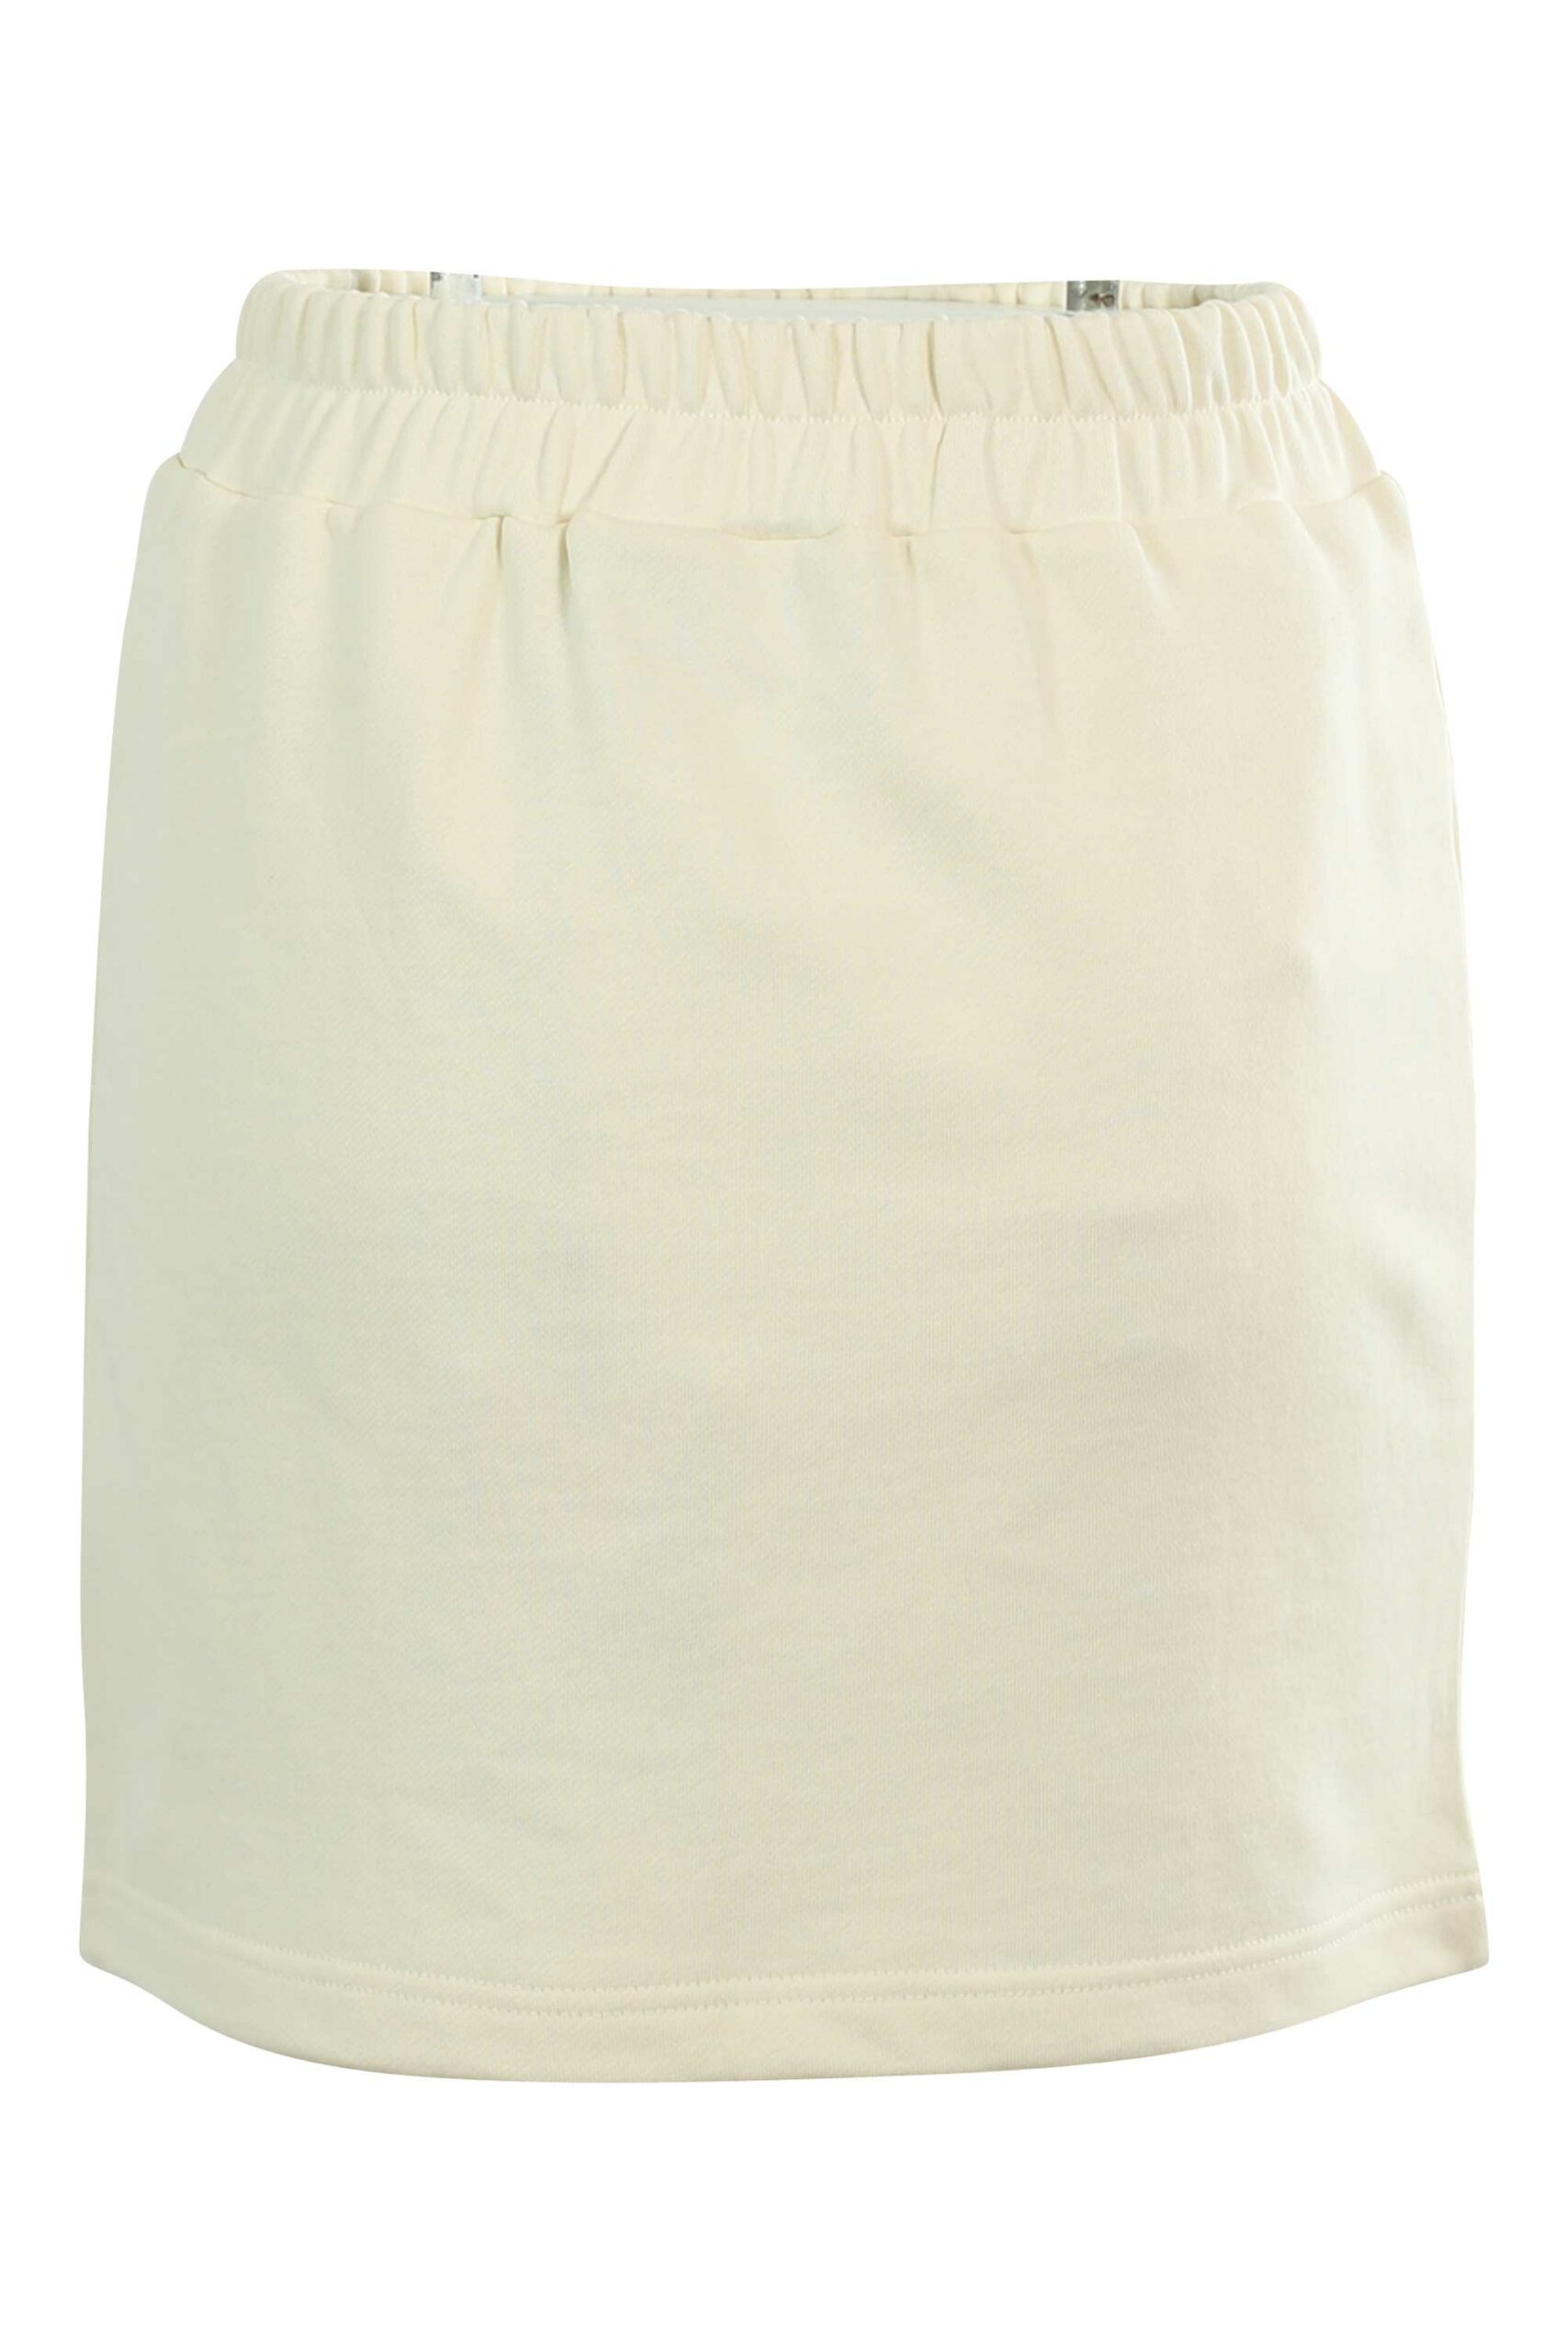 Falda blanca corta – Milo Boutique